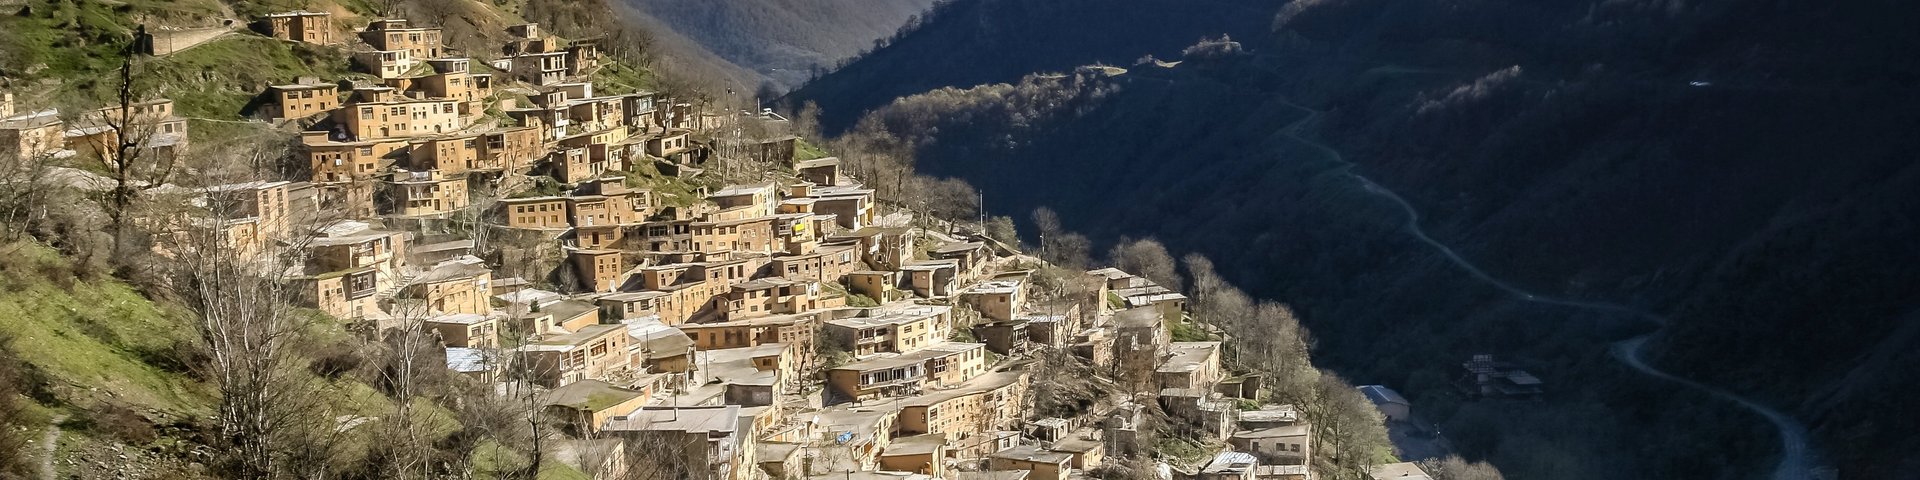 Blick auf das an einem Hang gebaute Bergdorf Masuleh im Iran